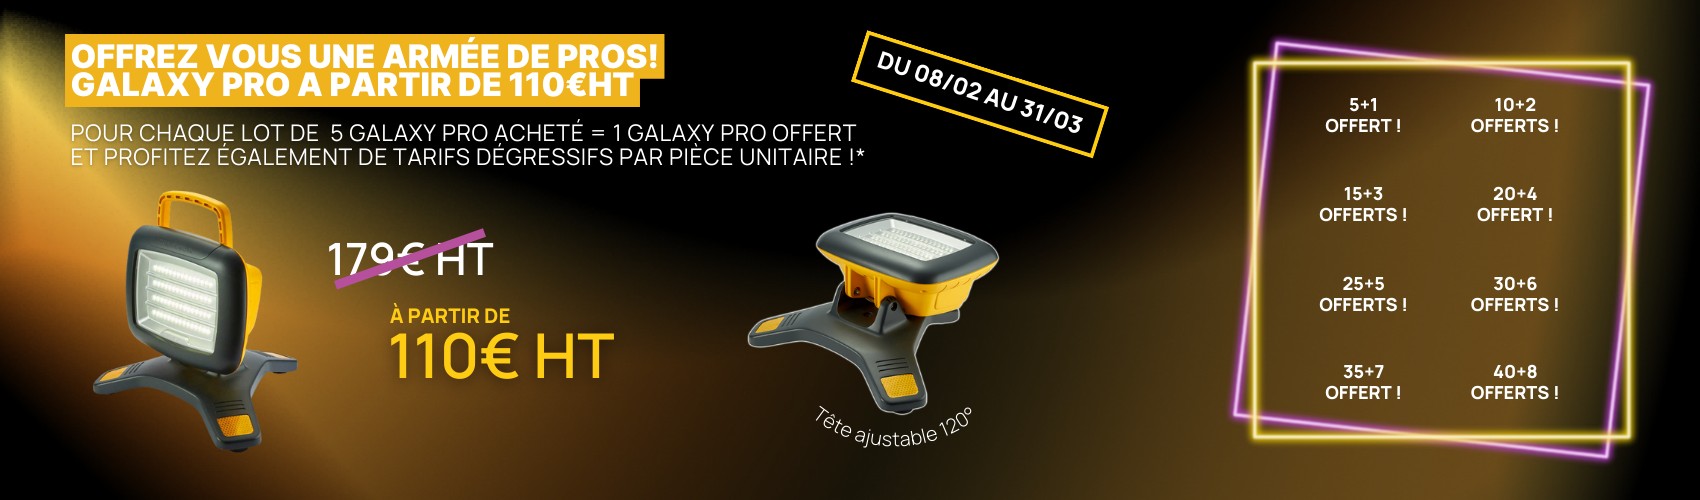 Offrez-vous une armée de pros ! Galaxy Pro à partir de 110€ HT !